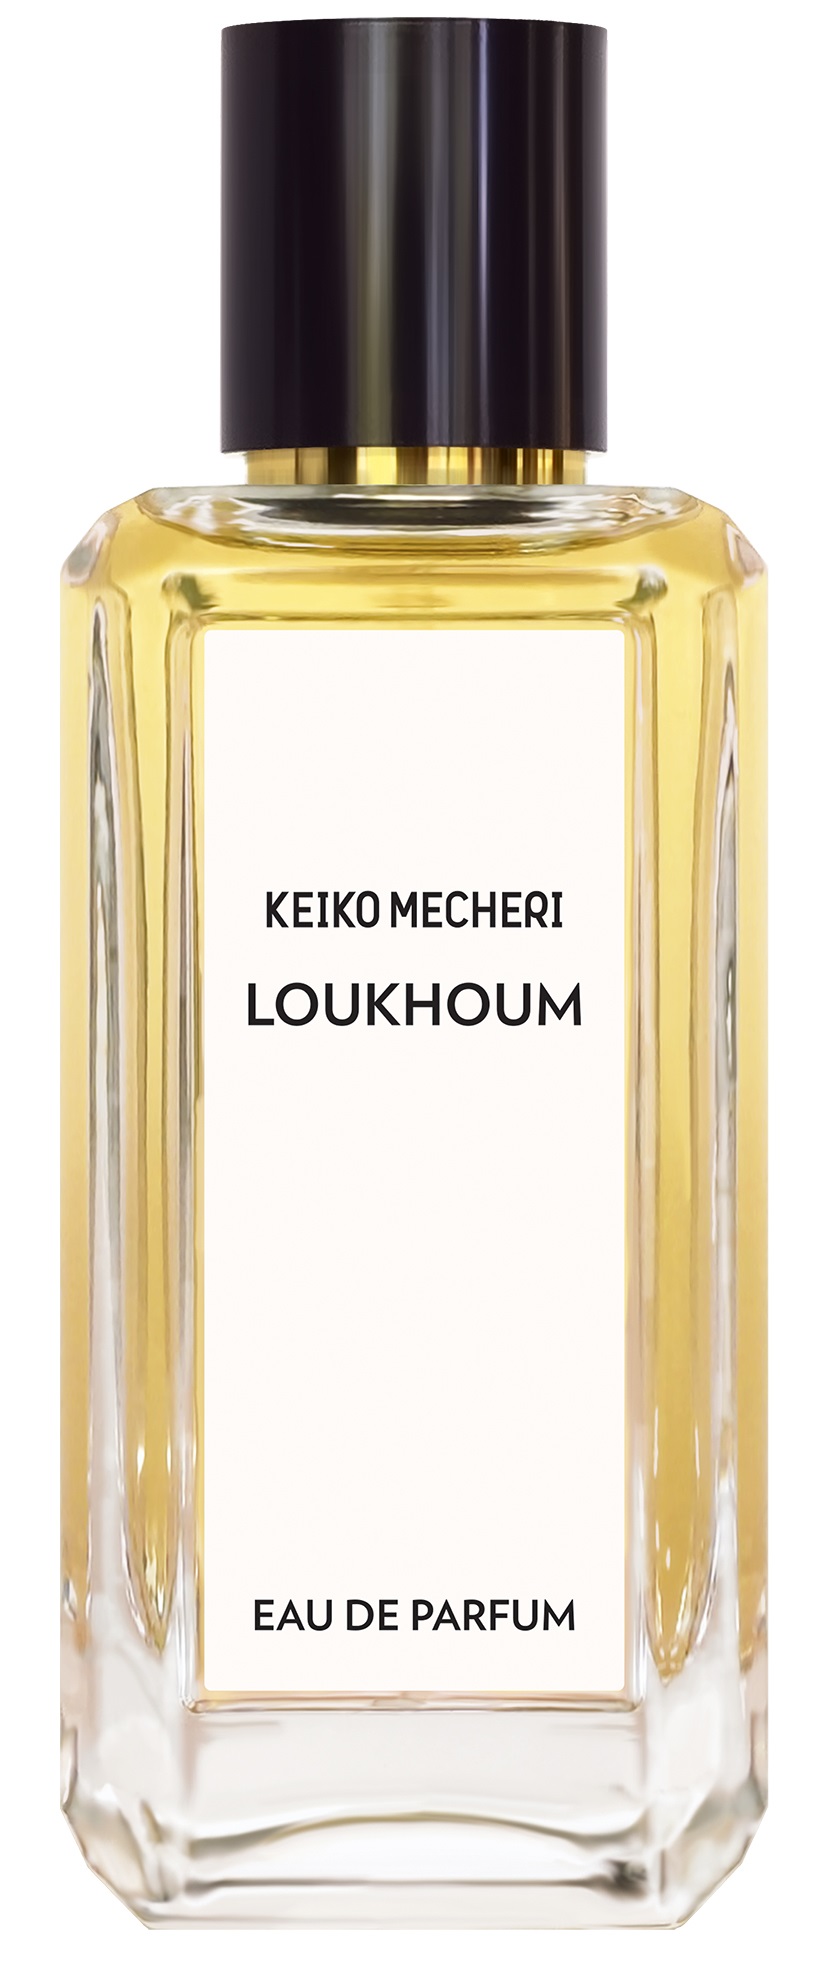 Keiko Mecheri Loukhoum edp 100 ml.